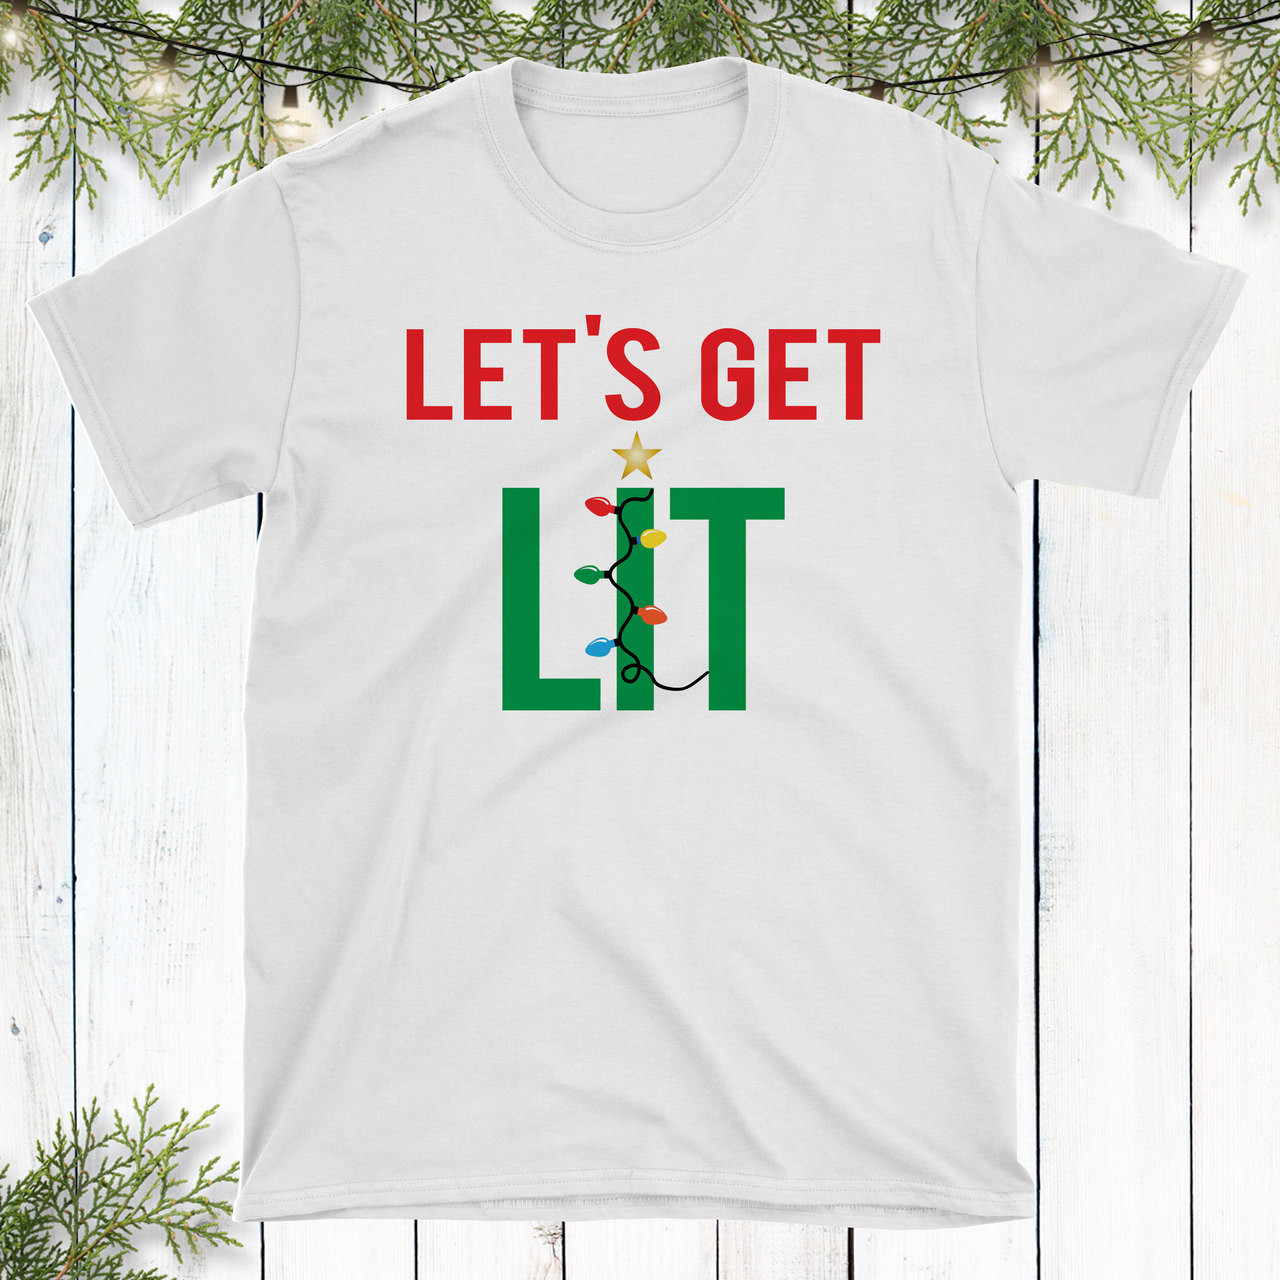 get lit t shirt